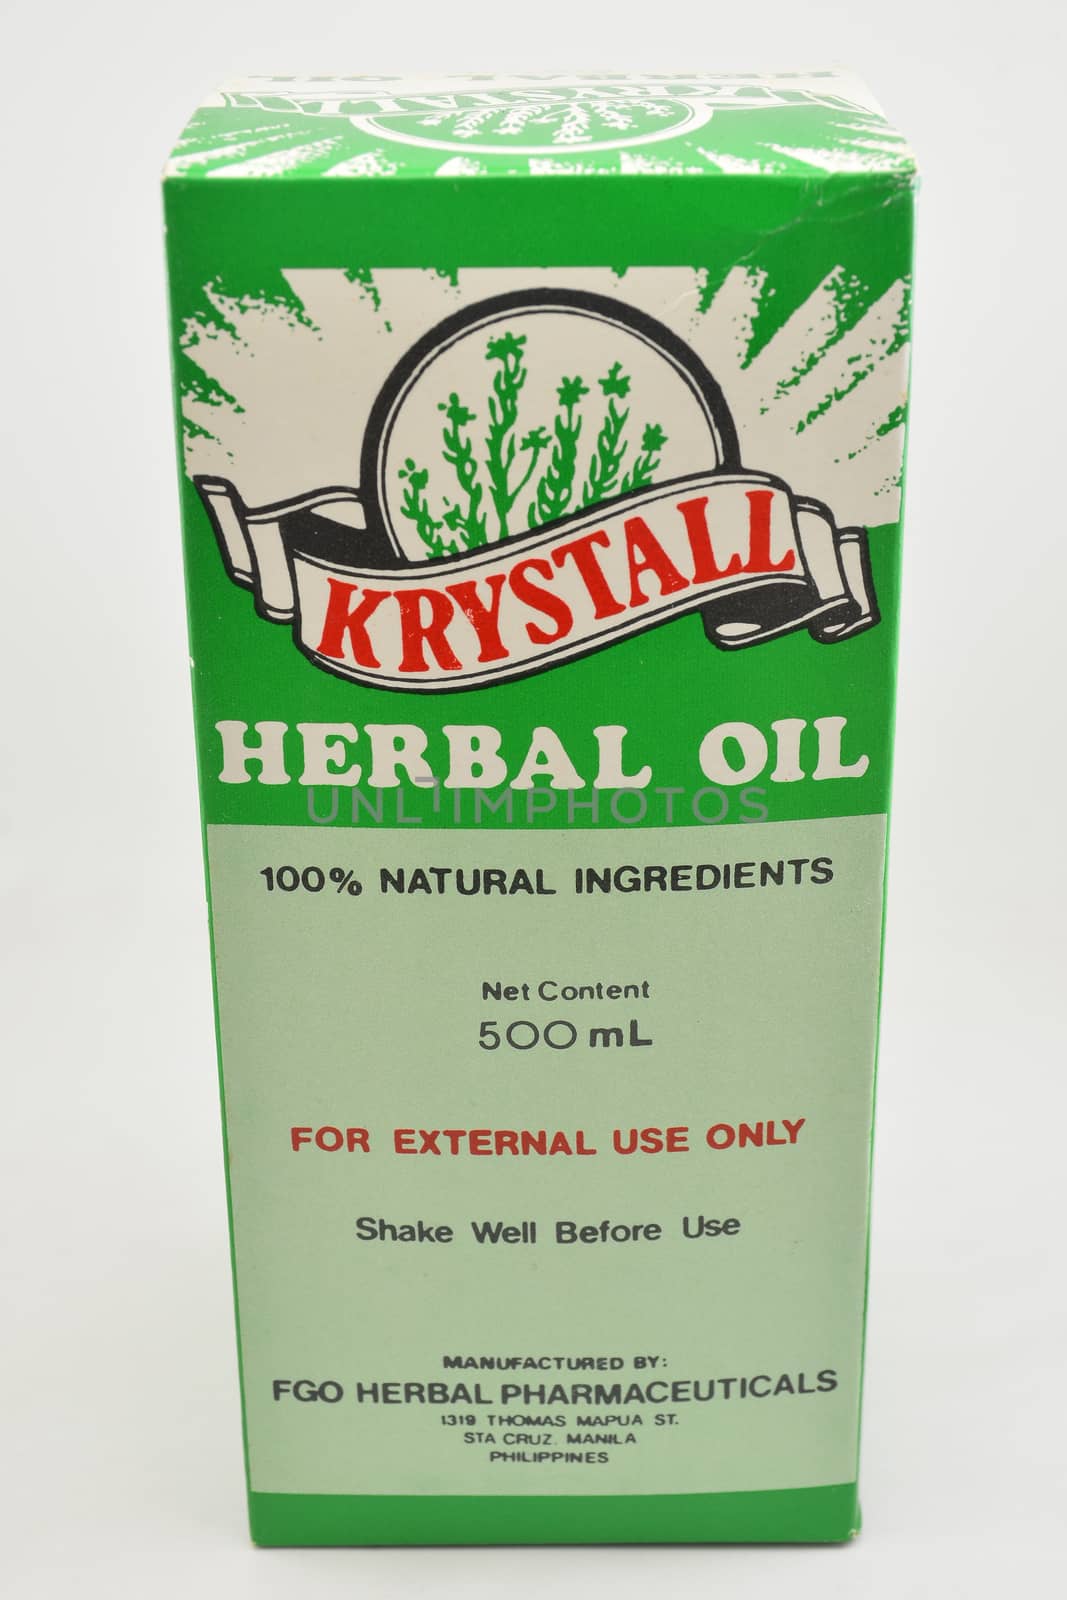 MANILA, PH - SEPT 10 - Krystall herbal oil box on September 10, 2020 in Manila, Philippines.